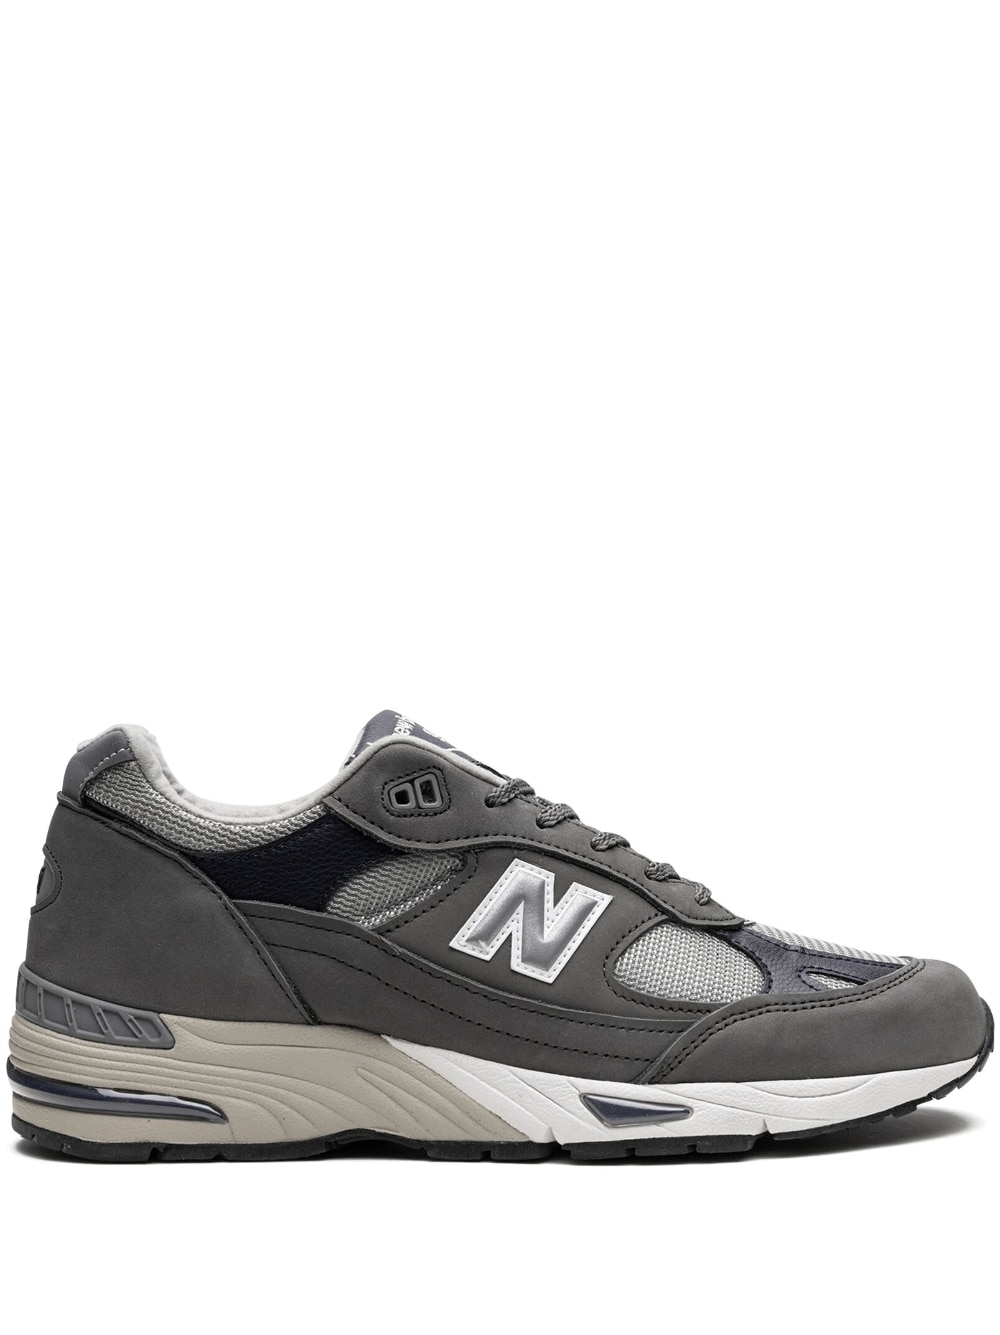 New Balance 991 "Castlerock" low-top sneakers - Grey